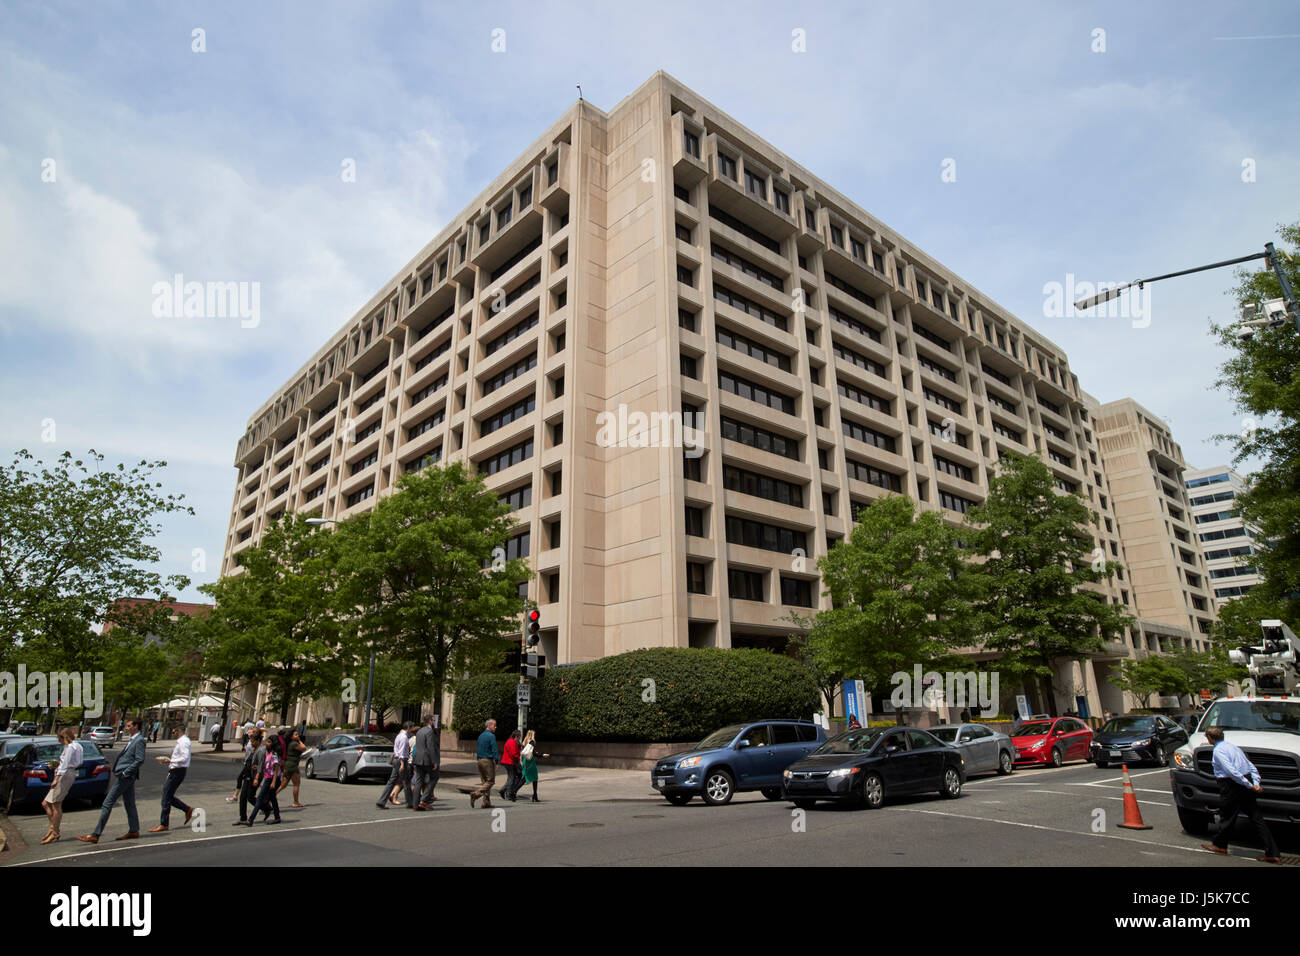 Fonds monétaire international FMI HQ1 siège bâtiment Washington DC USA Banque D'Images